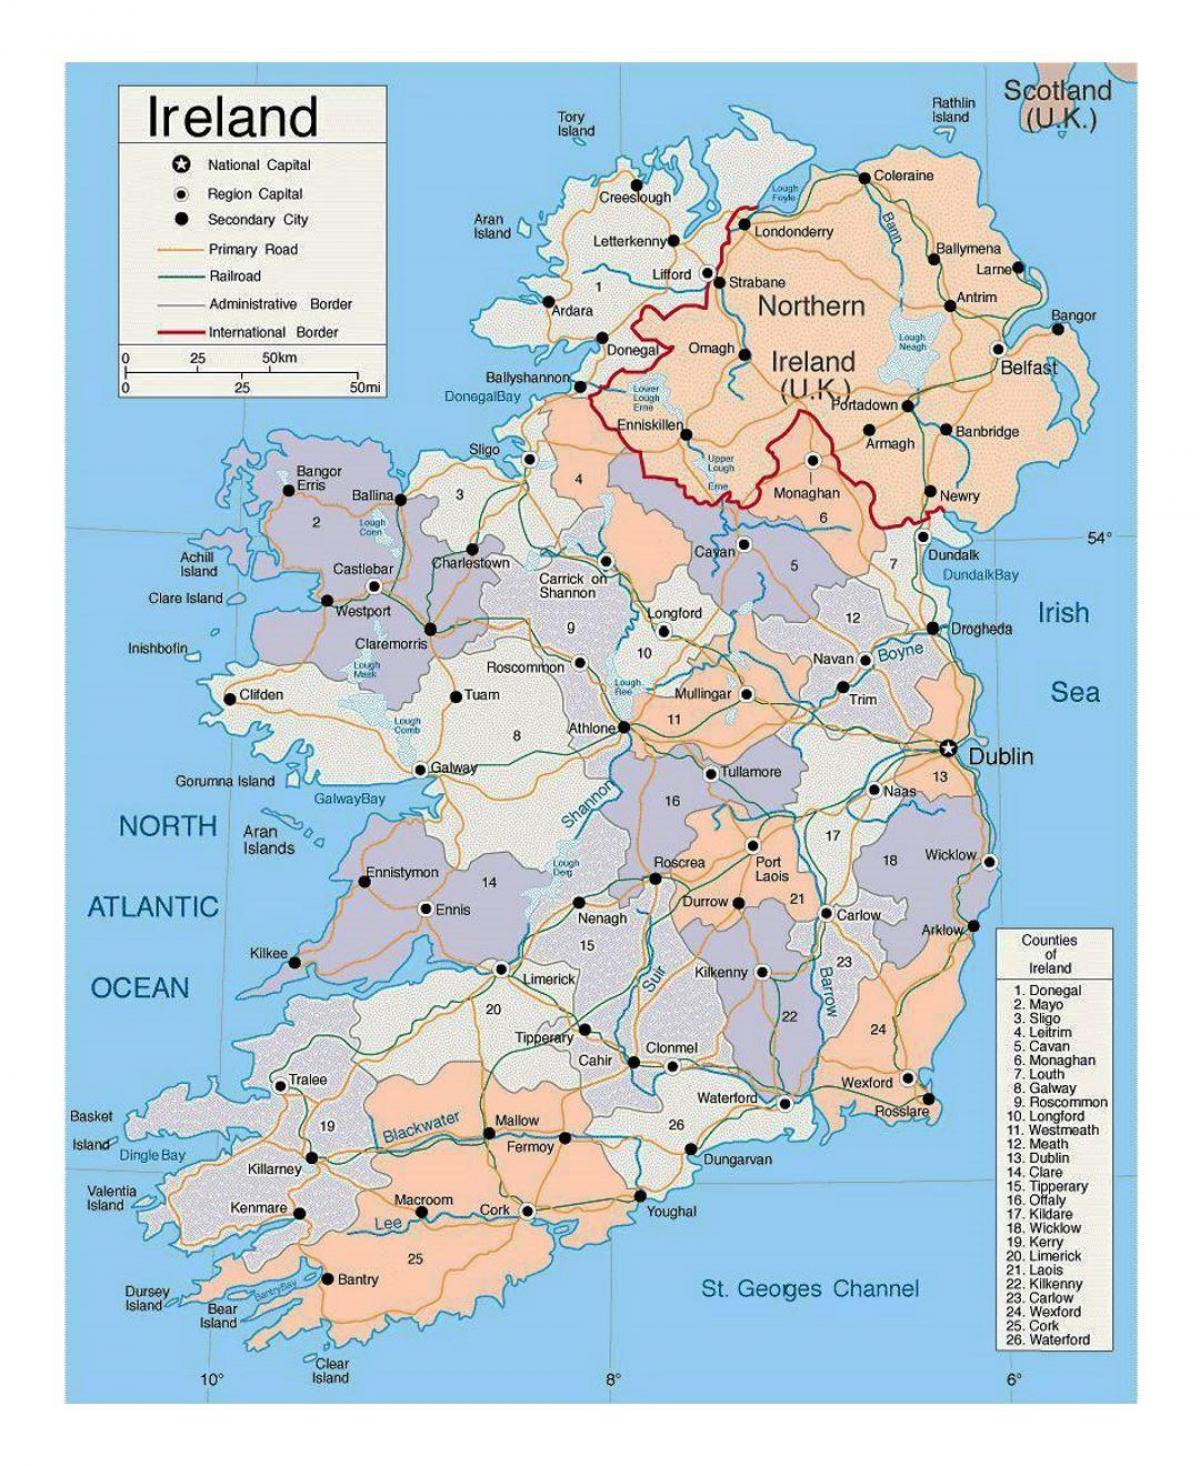 kartē ar pilsētām, īrija